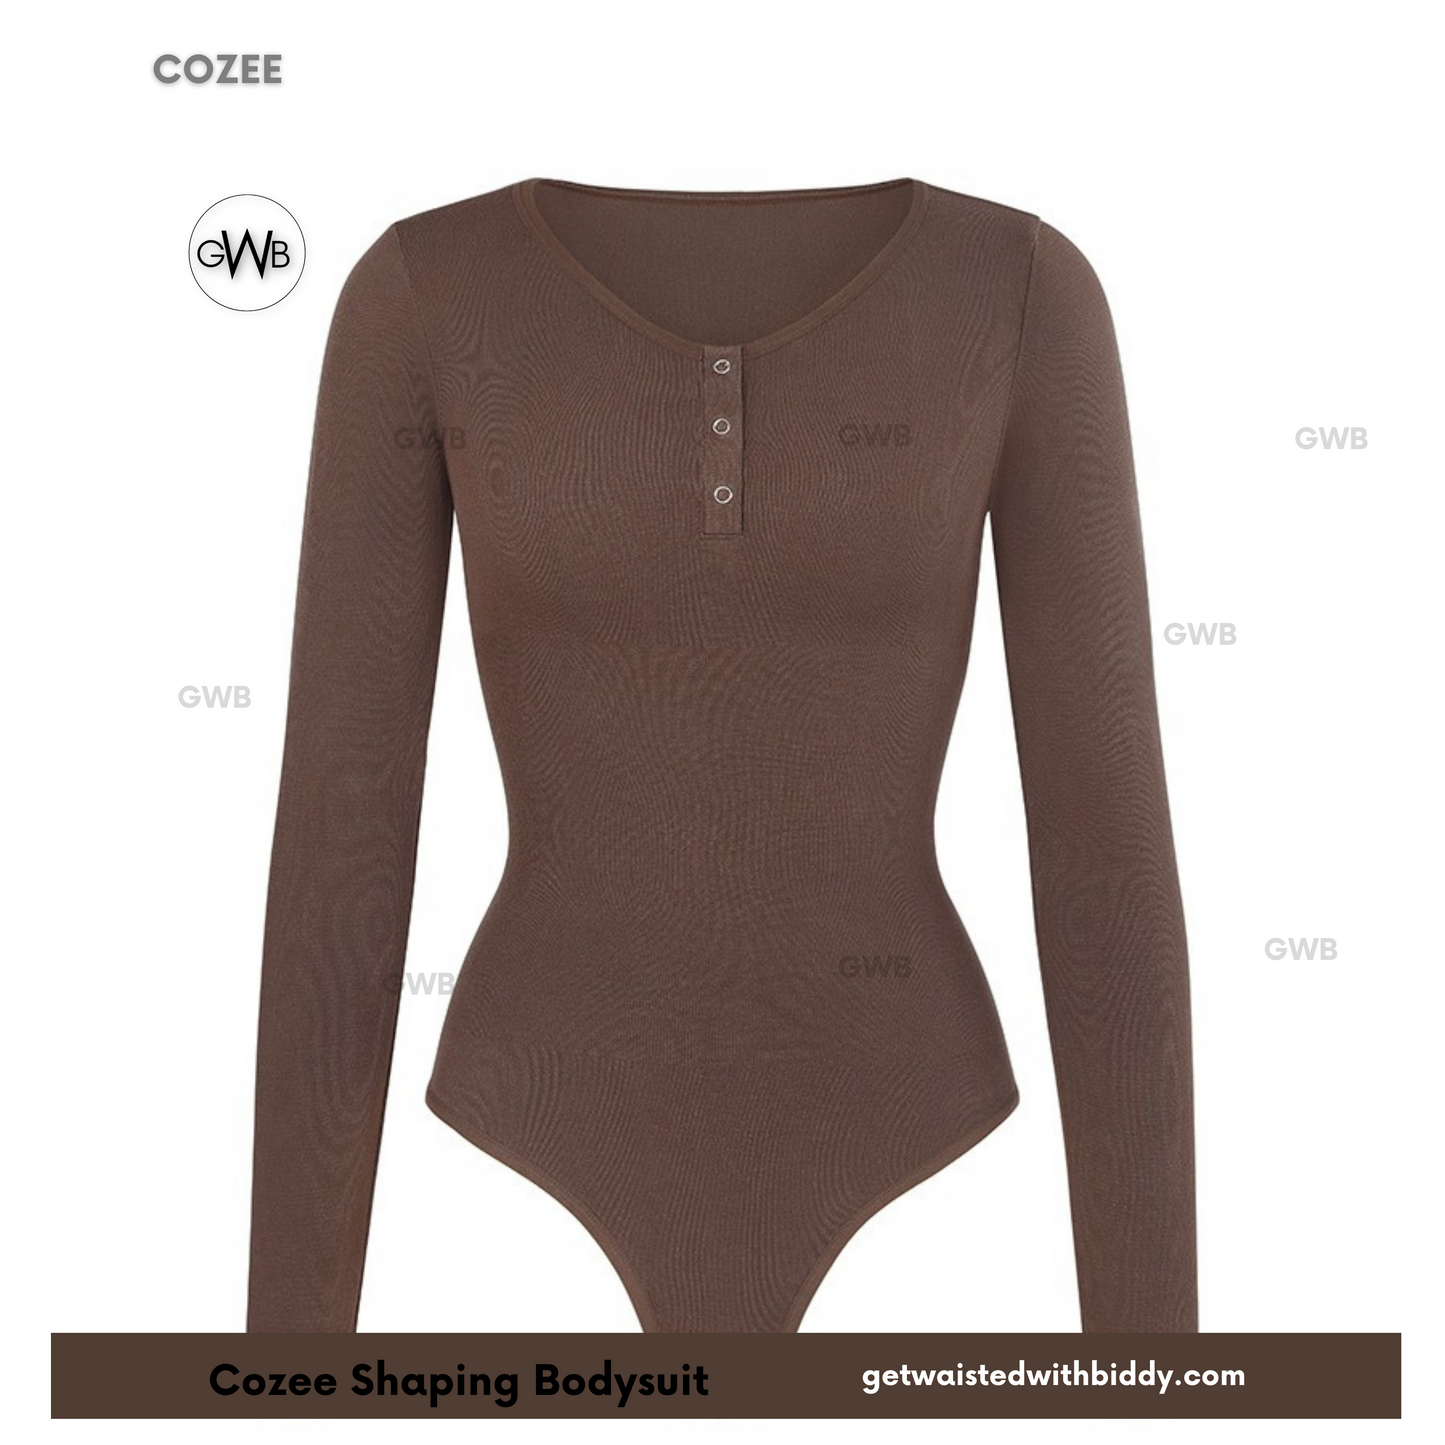 New! Cozee Shapewear Bodysuit - Coffee Brown